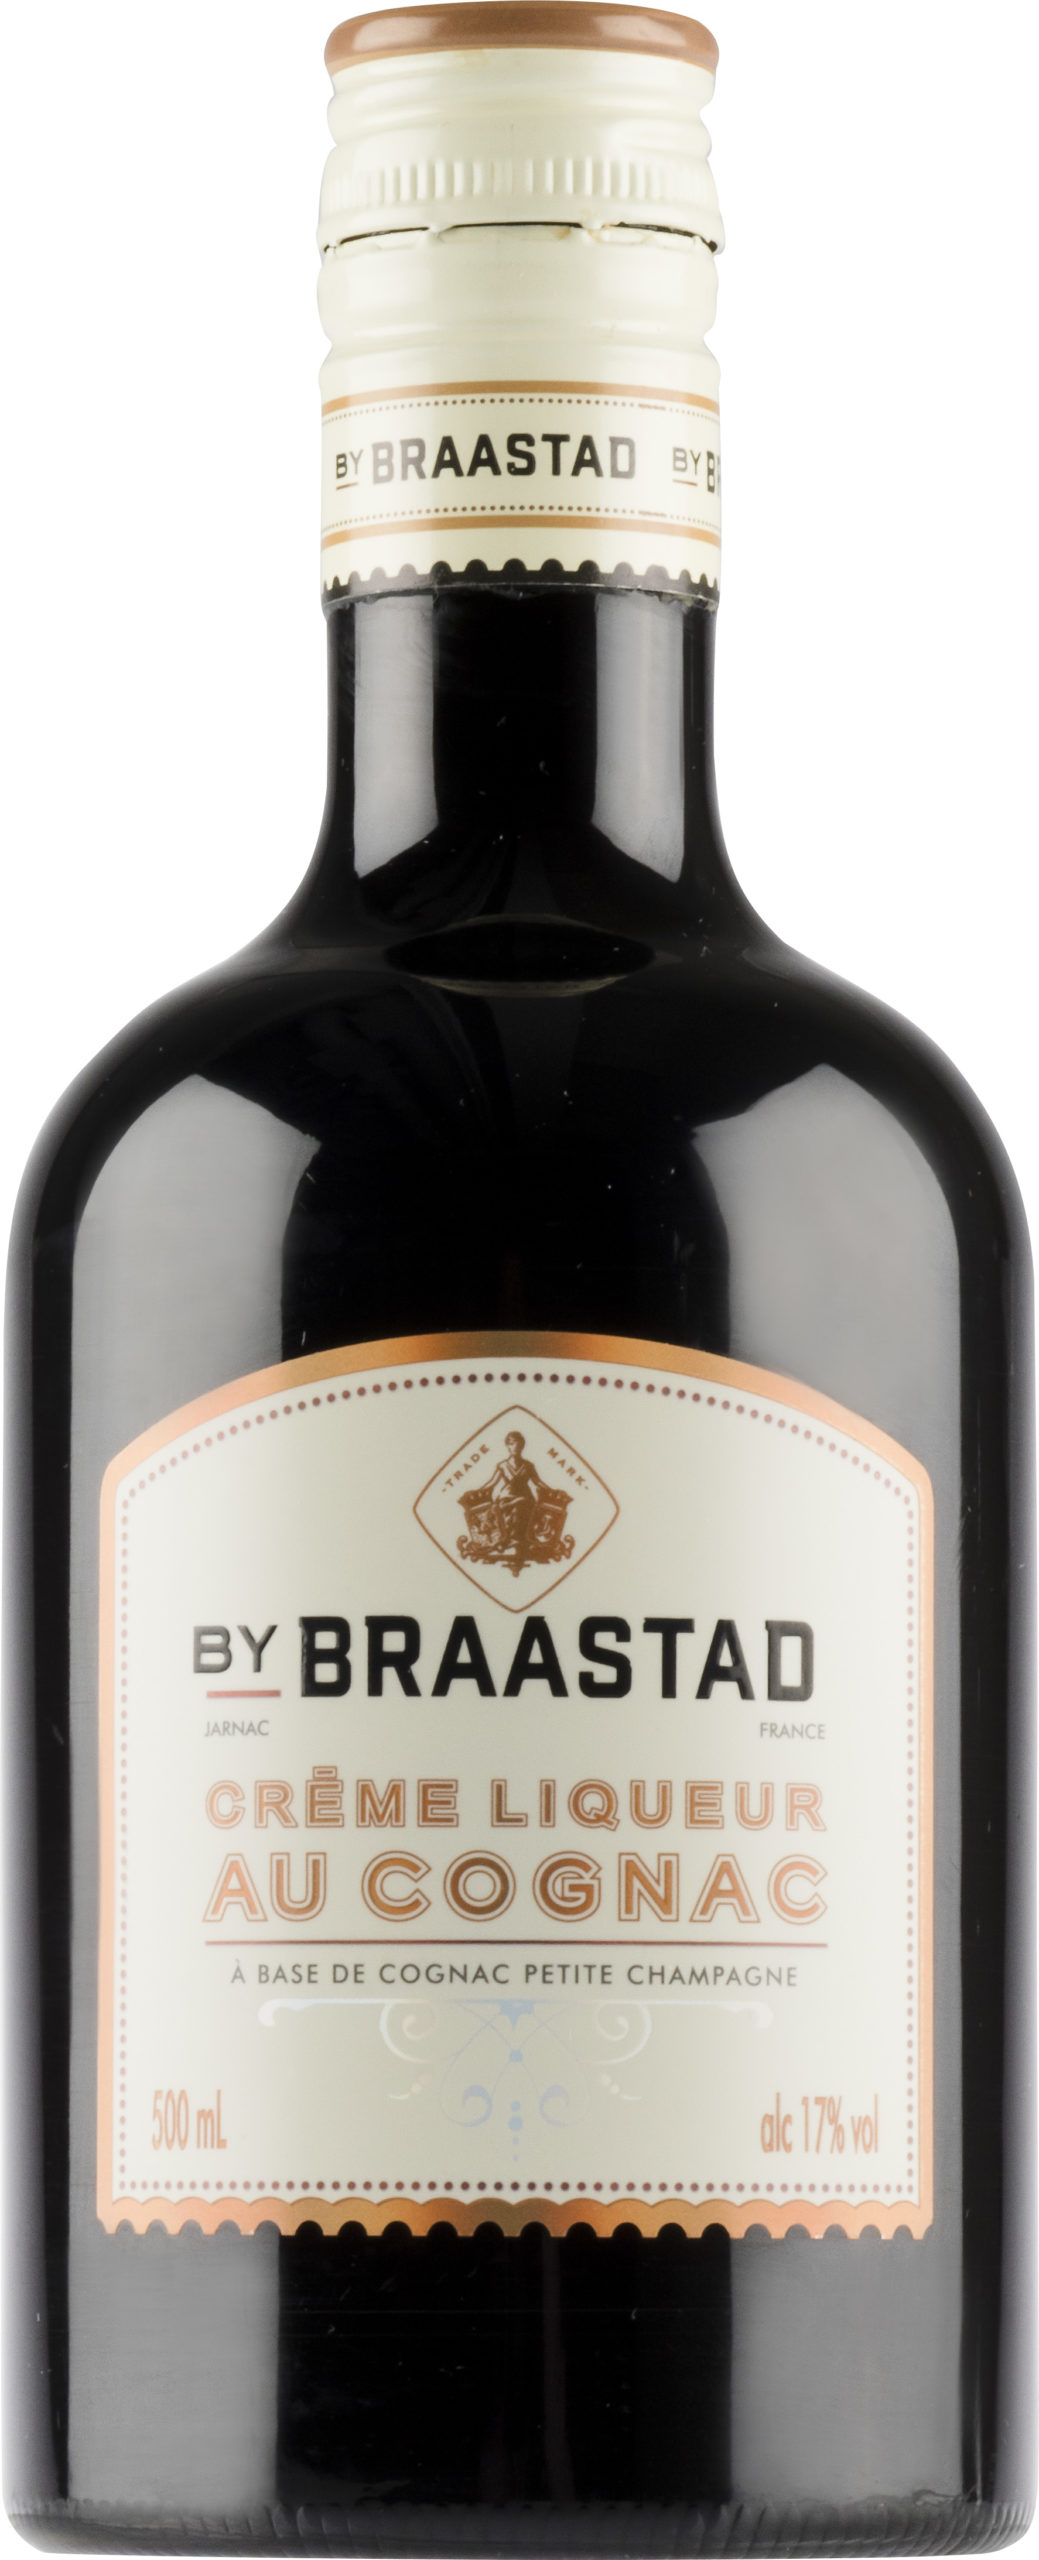 Braastad Creme Liqueur au Cognac plastic bottle